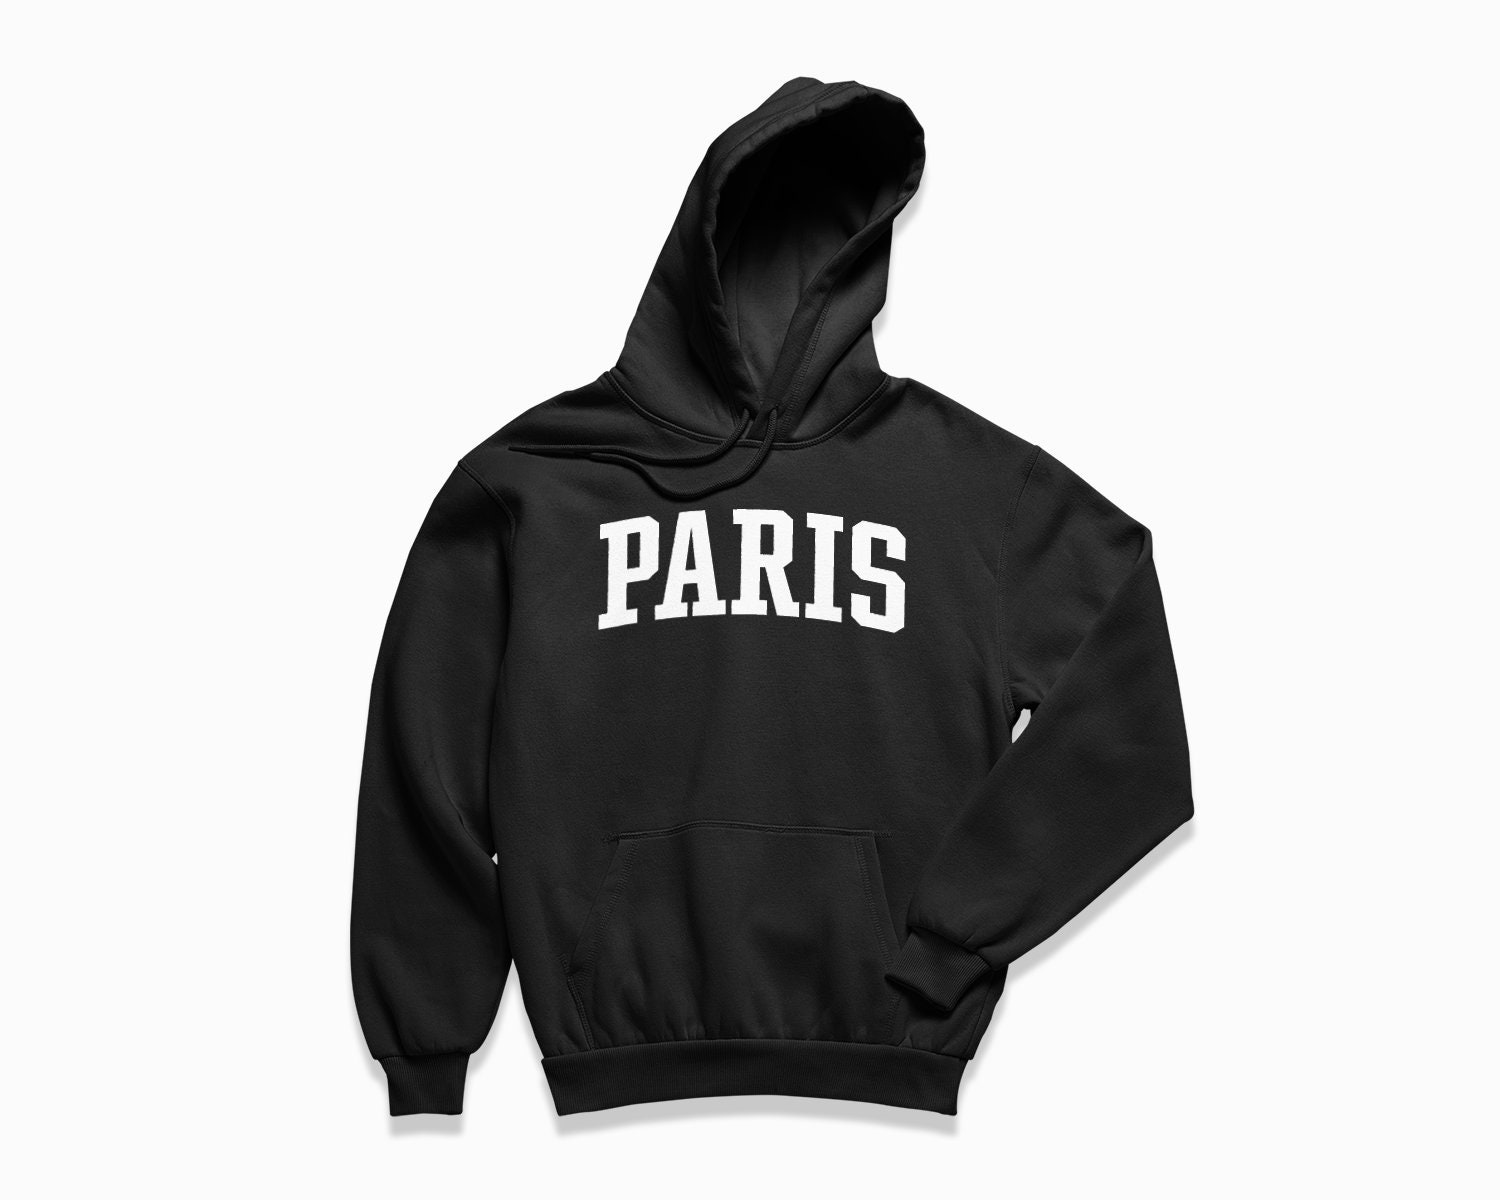 Paris Hoodie: Paris France Hooded Sweatshirt / College Style - Etsy UK